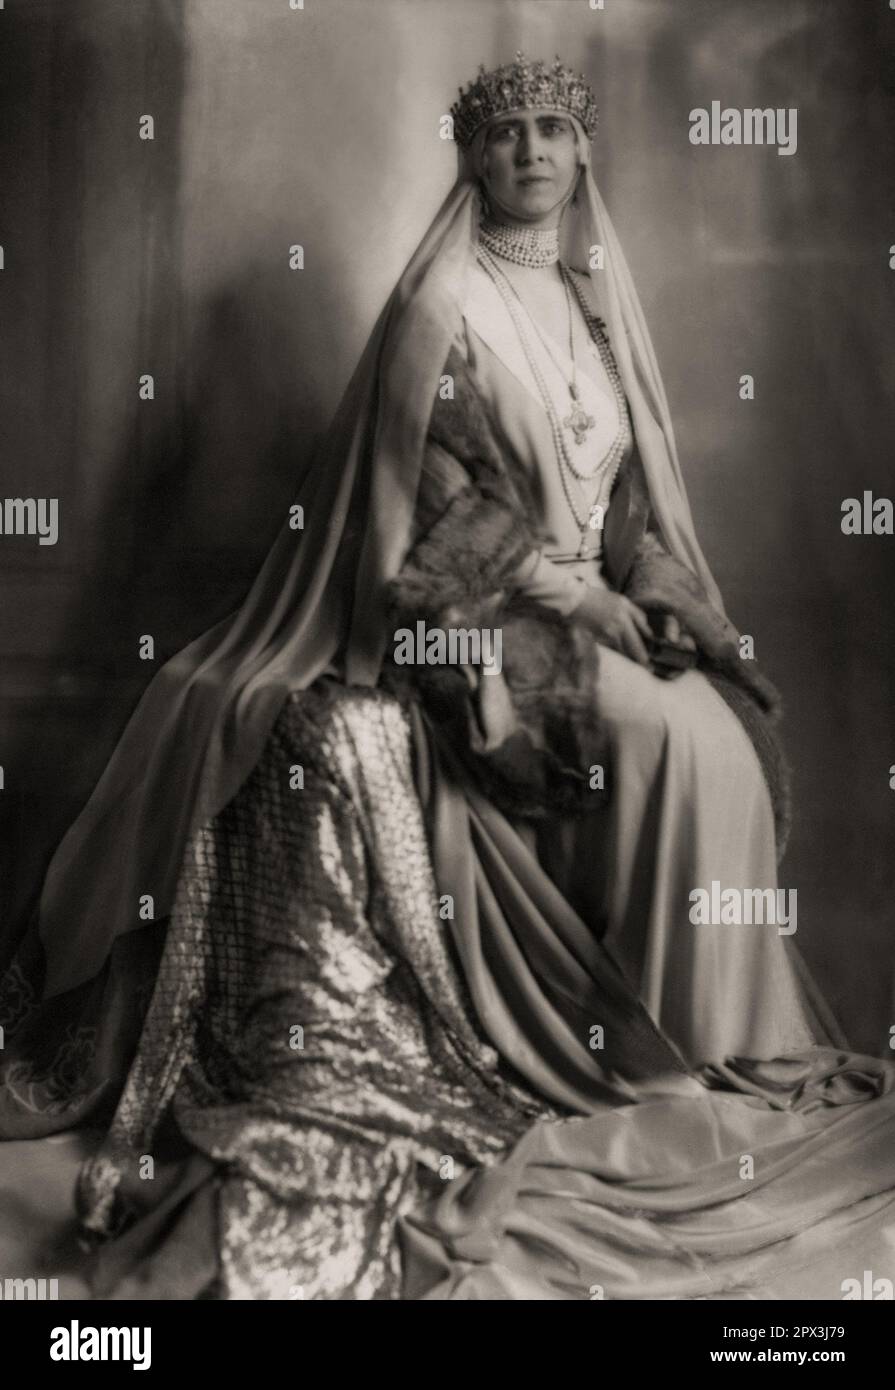 1929 , Roma , ITALIEN : Königin SOPHIE Dorothea Ulrike von GRIECHENLAND ( 1870 - 1932 ) , geborene Prinzessin VON PREUSSEN von Griechenland und Dänemark , Schwester von Kaiser Wilhelm II von Deutschland , verheiratet mit KÖNIG VON GRIECHENLAND KONSTANTINOS I ( Costantine , 1868 - 1923 ). Mutter von 3 Königen Griechenlands ( GIORGIOS II , ALEXANDROS I und PAULOS I ) und Prinzessin Irene ( 1904 - 1974 ) , verheiratet mit dem italienischen Prinzen Aimone von SAVOIA AOSTA Herzog von SPOLETO . Foto: EVA BARRETT ( 1879 - 1950 ). - GRECIA - HAUS SCHLESWIG-HOLSTEIN SONDERBURG GLUCKSBURG - COSTANTINO - SOPHIA - SOFIA - REGINA - GESCHICHTE - FOTO STORICHE - HAFEN Stockfoto